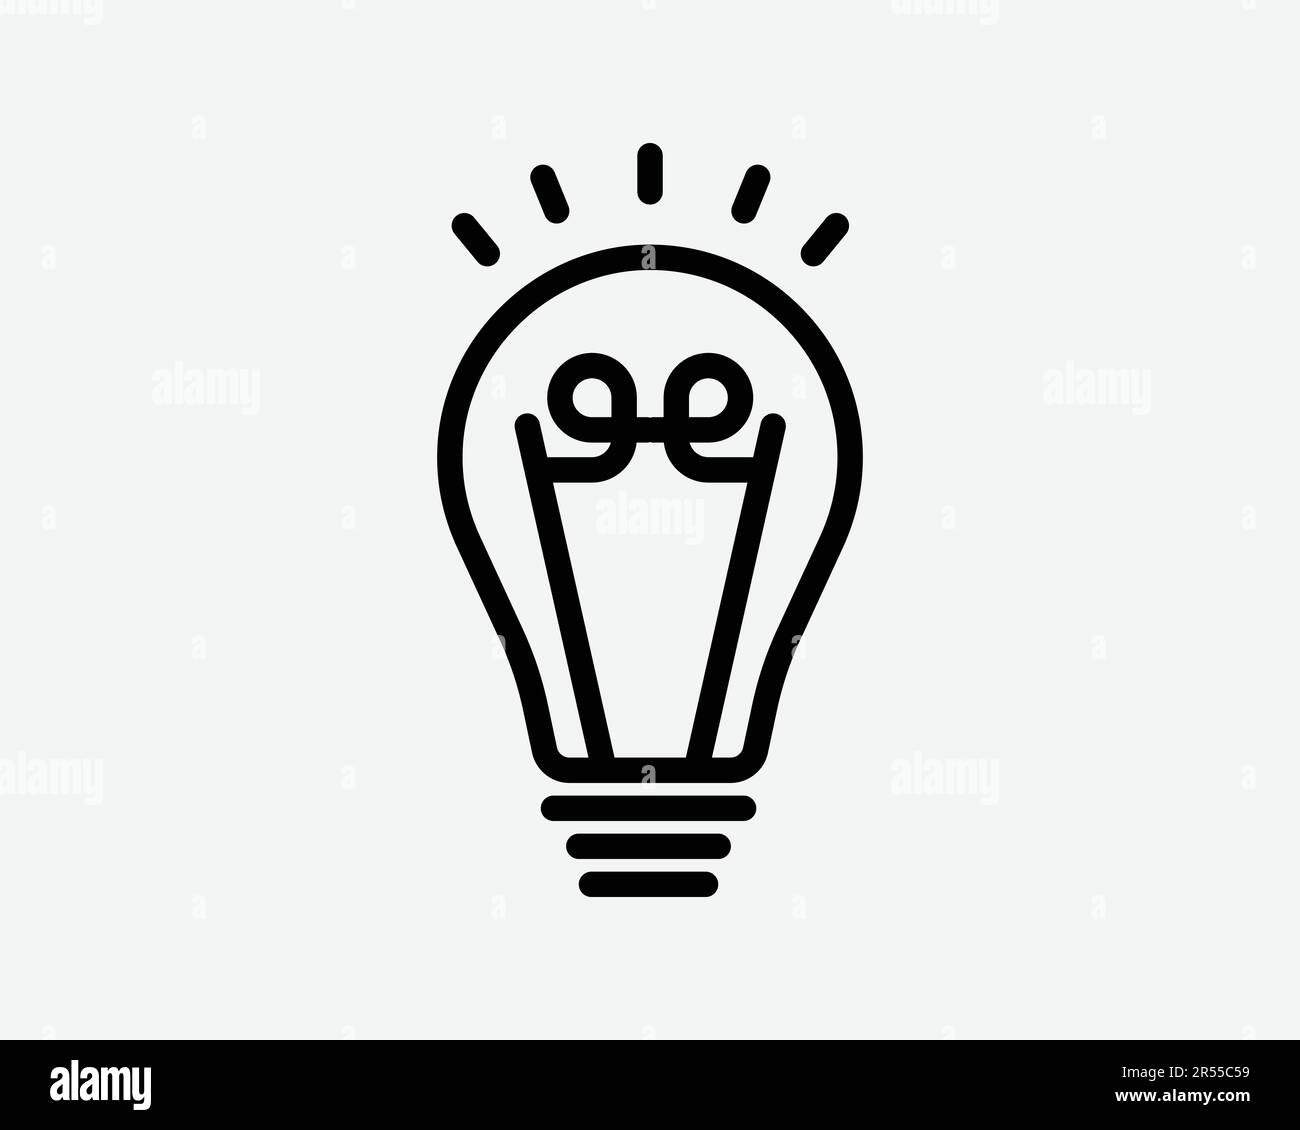 Ampoule icône ampoule électrique lampe éclat brillant idée innovation solution créative symbole Noir Illustration graphique Illustration Clipart EPS Vector Illustration de Vecteur